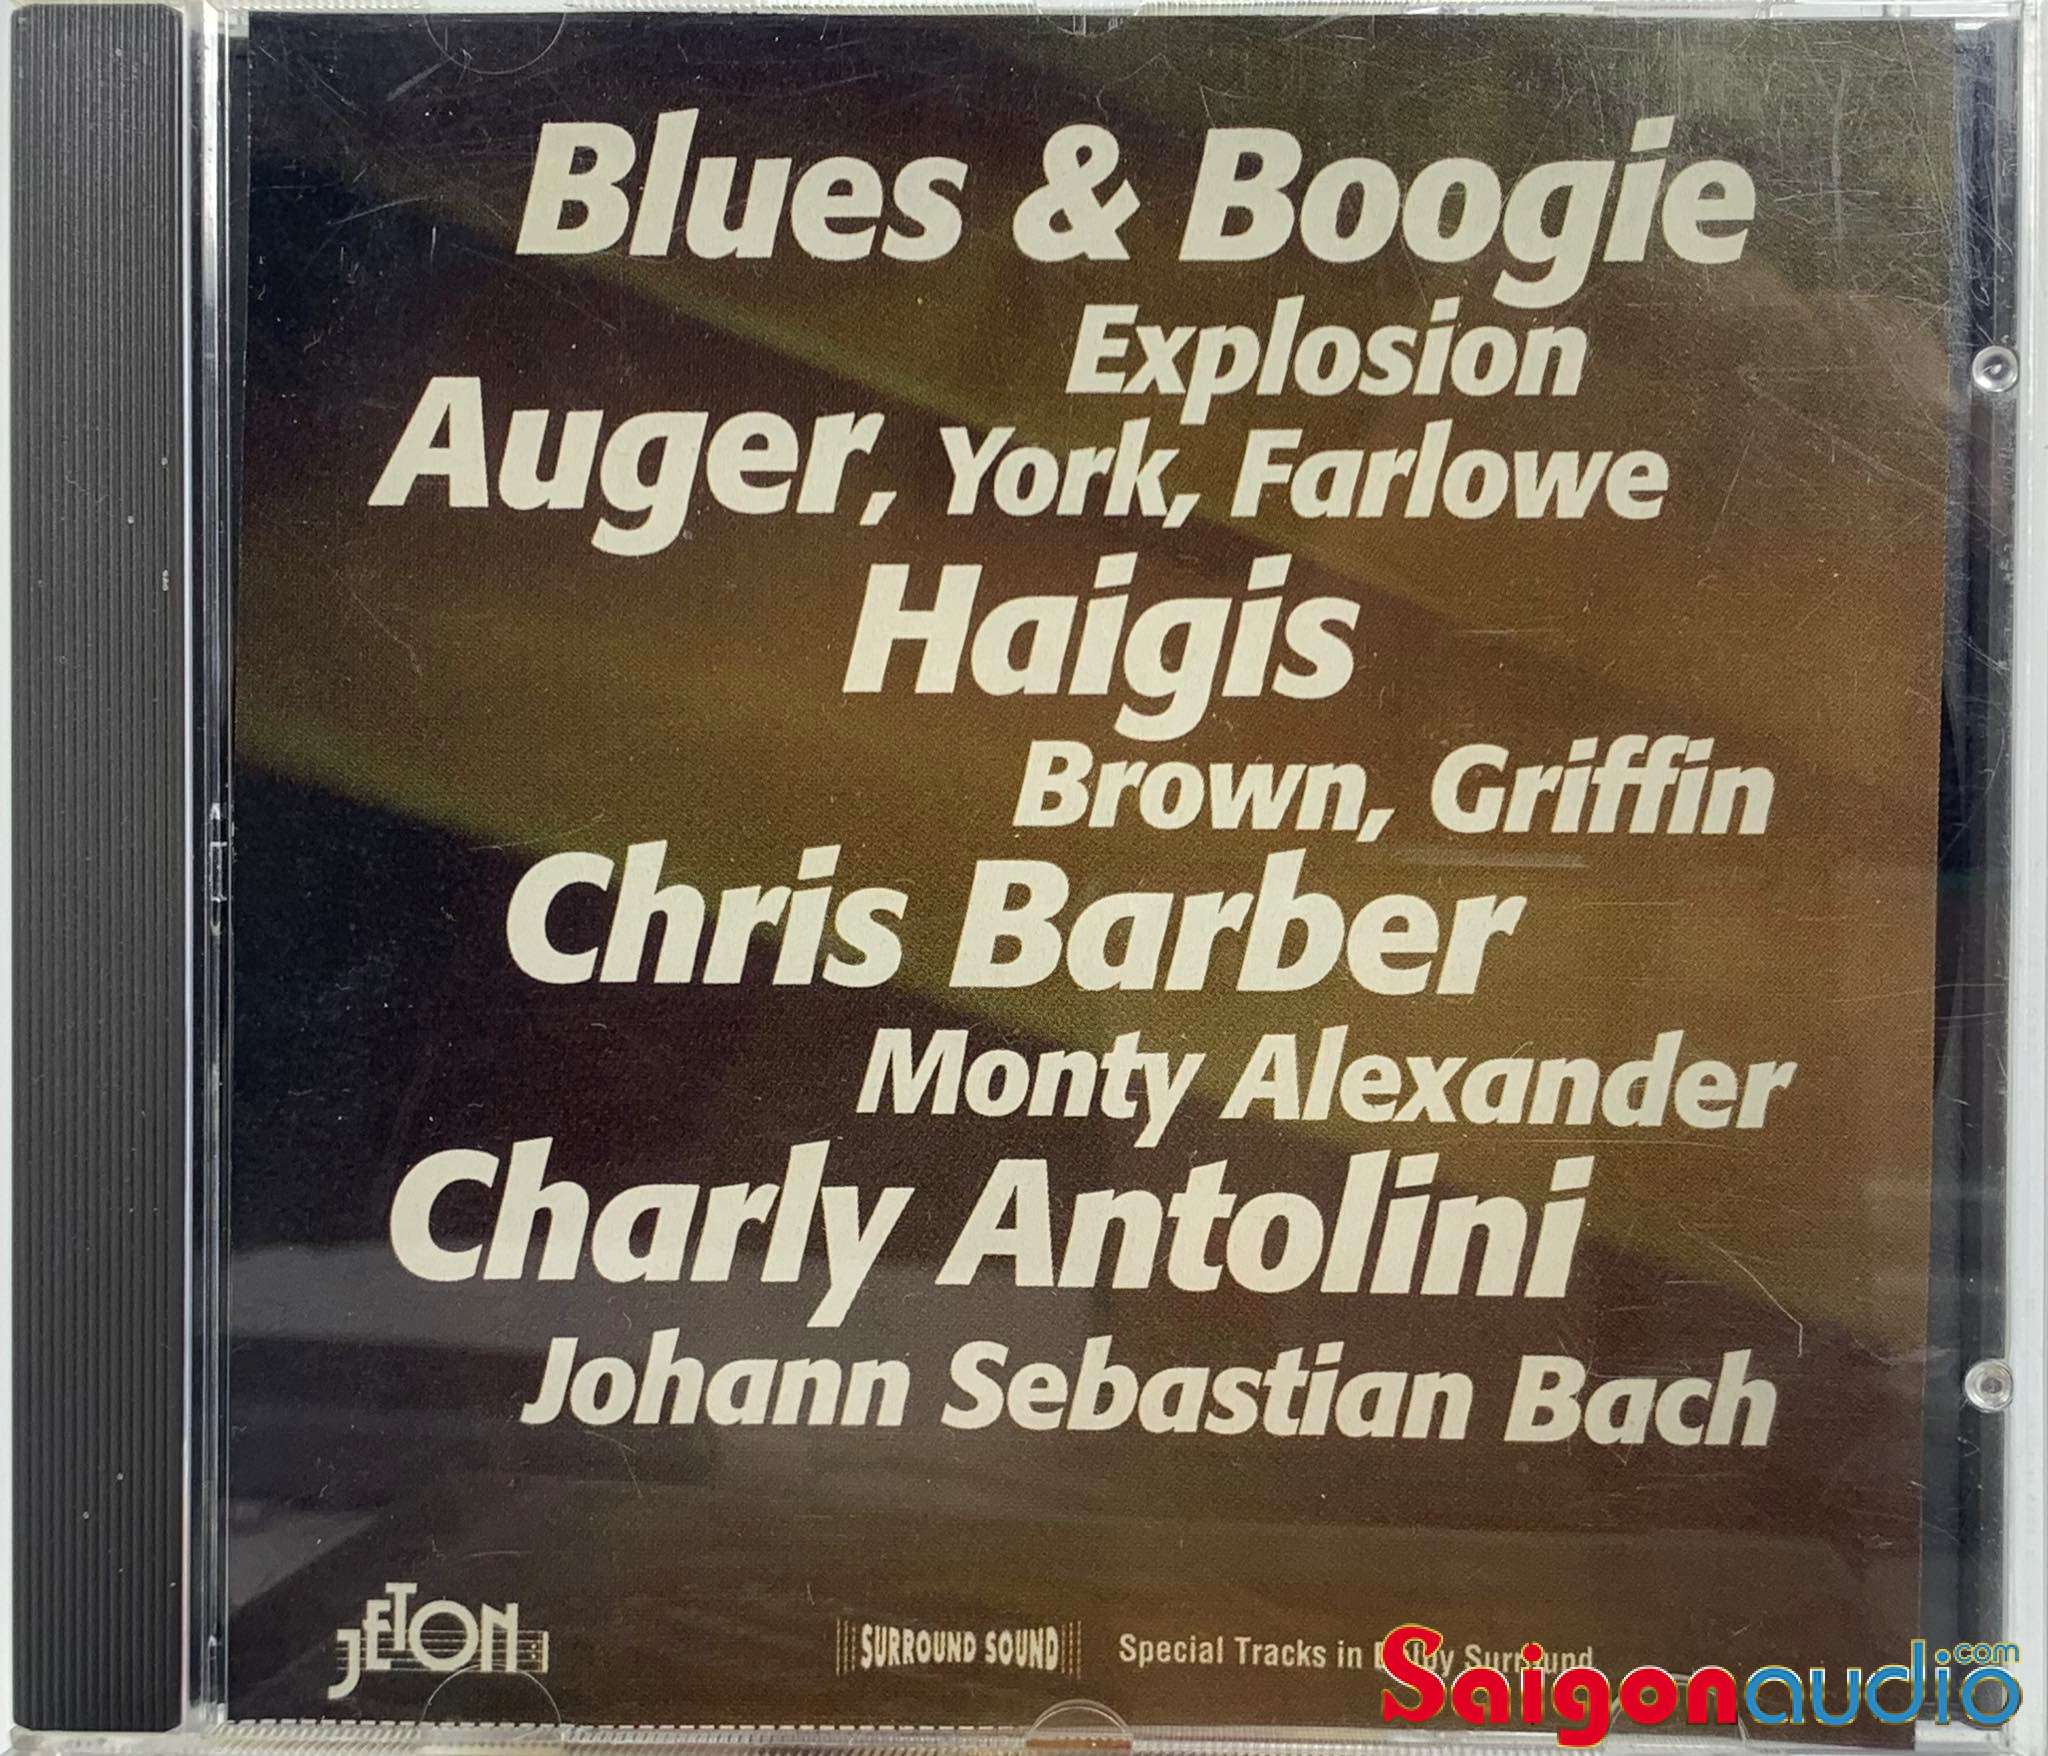 Đĩa CD nhạc gốc Reference Highlights High-Tech-Sound-Sampler Vol.1 (Blues & Boogie) (Free ship khi mua 2 đĩa CD cùng hoặc khác loại)